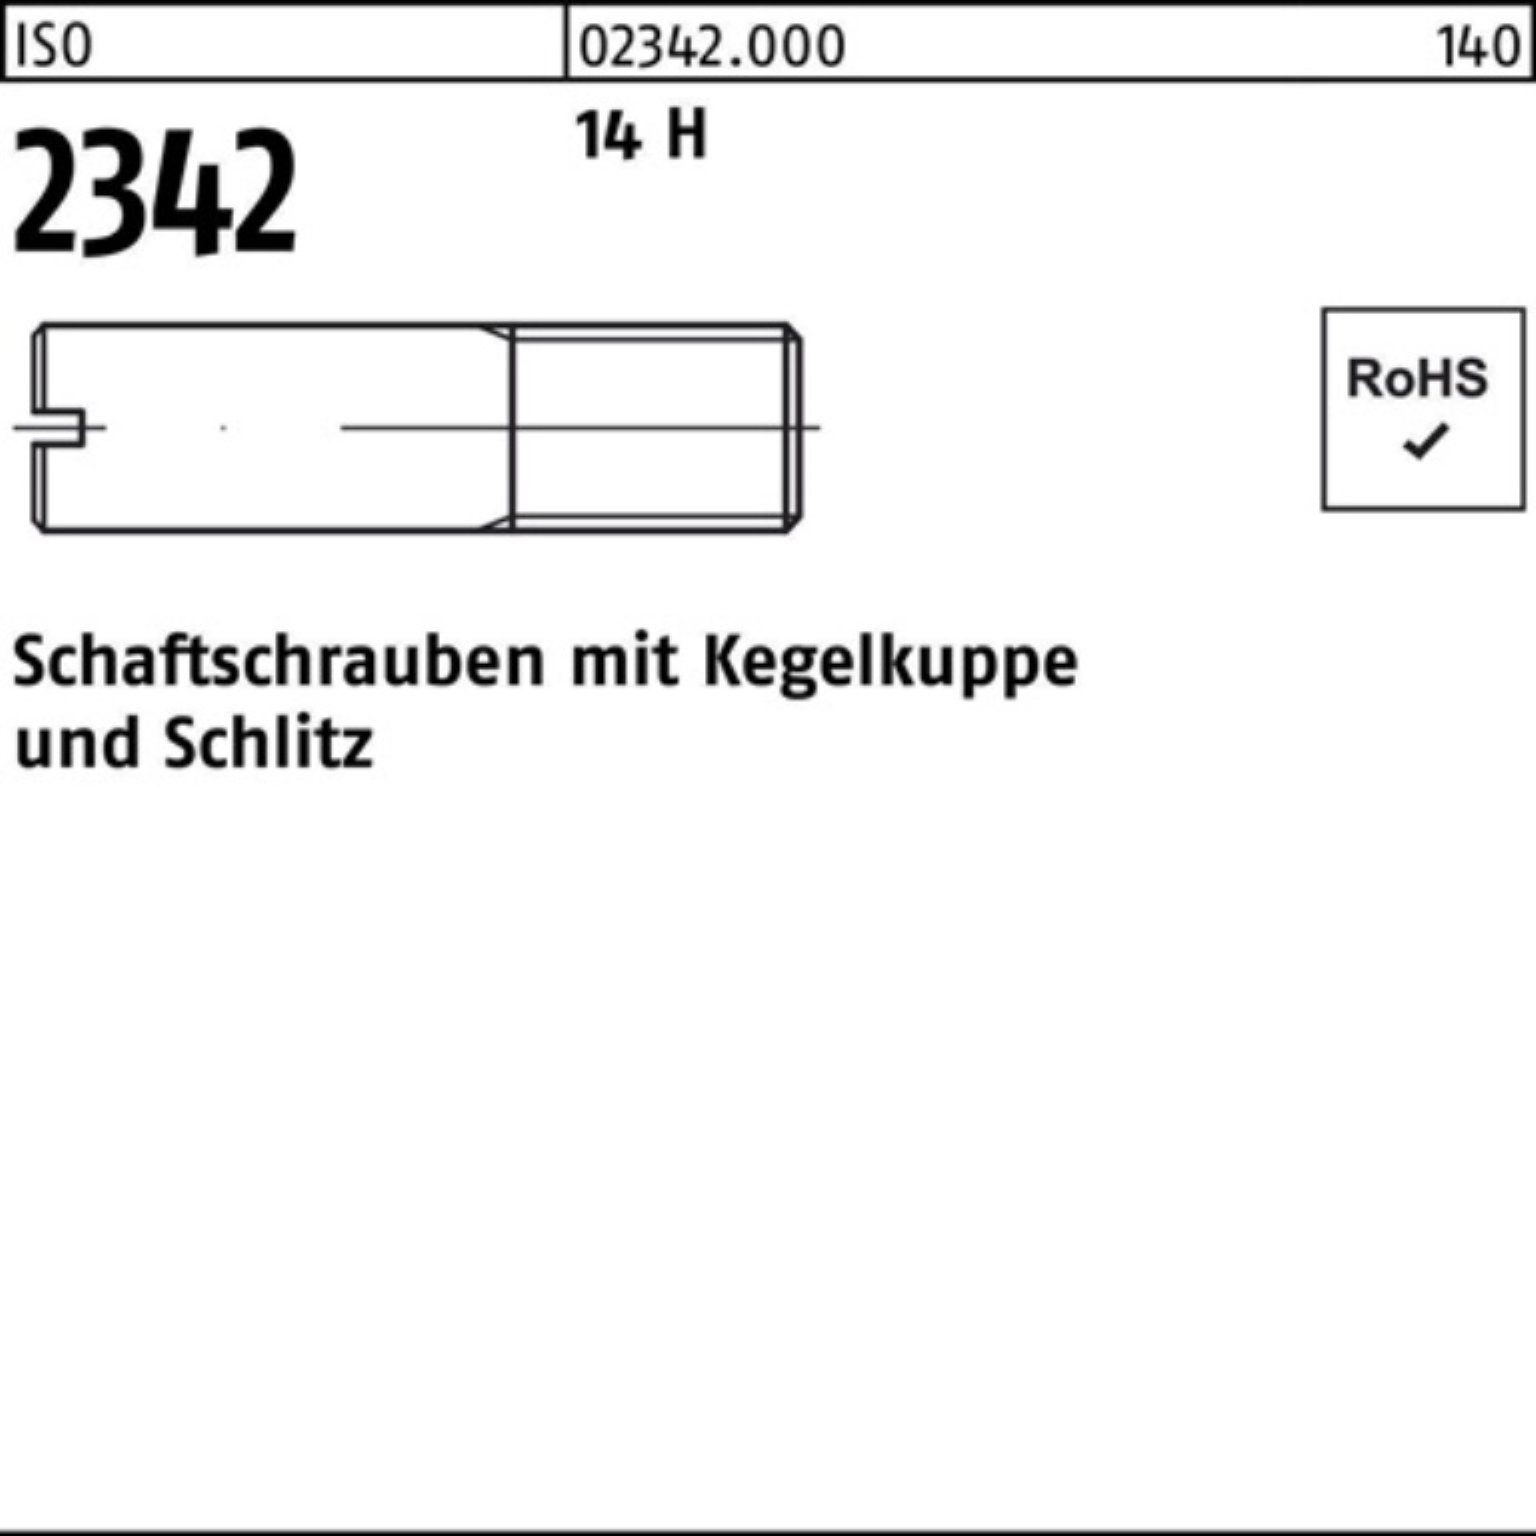 Schaftschraube 100 Kegelkuppe/Schlitz 30 Schraube Reyher Pack H 14 2342 ISO M6x 100er